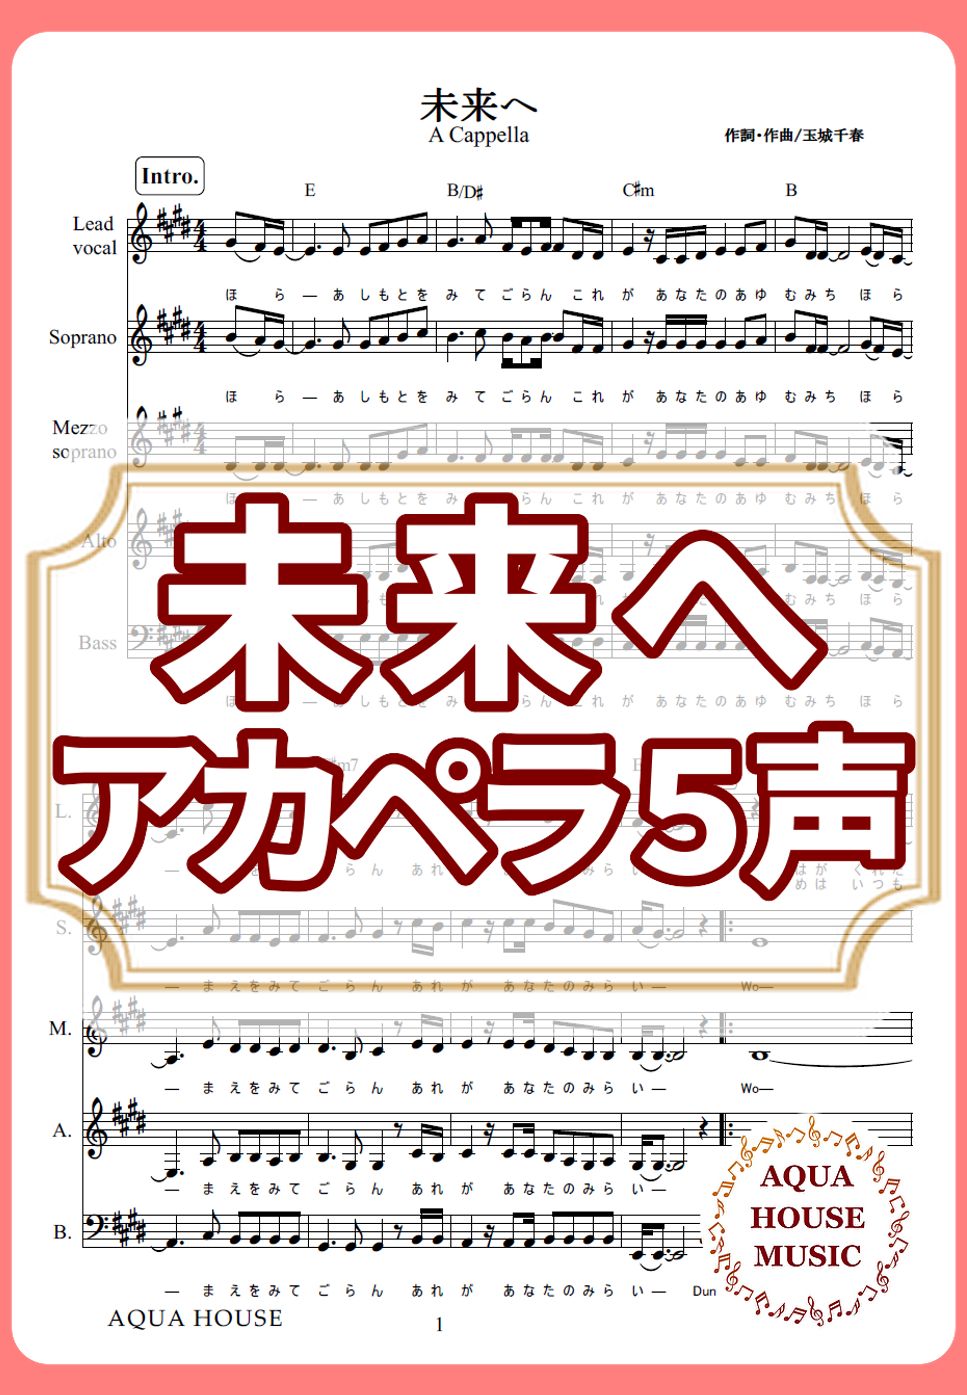 Kiroro - 未来へ (アカペラ楽譜♪５声ボイパなし) by 飯田 亜紗子